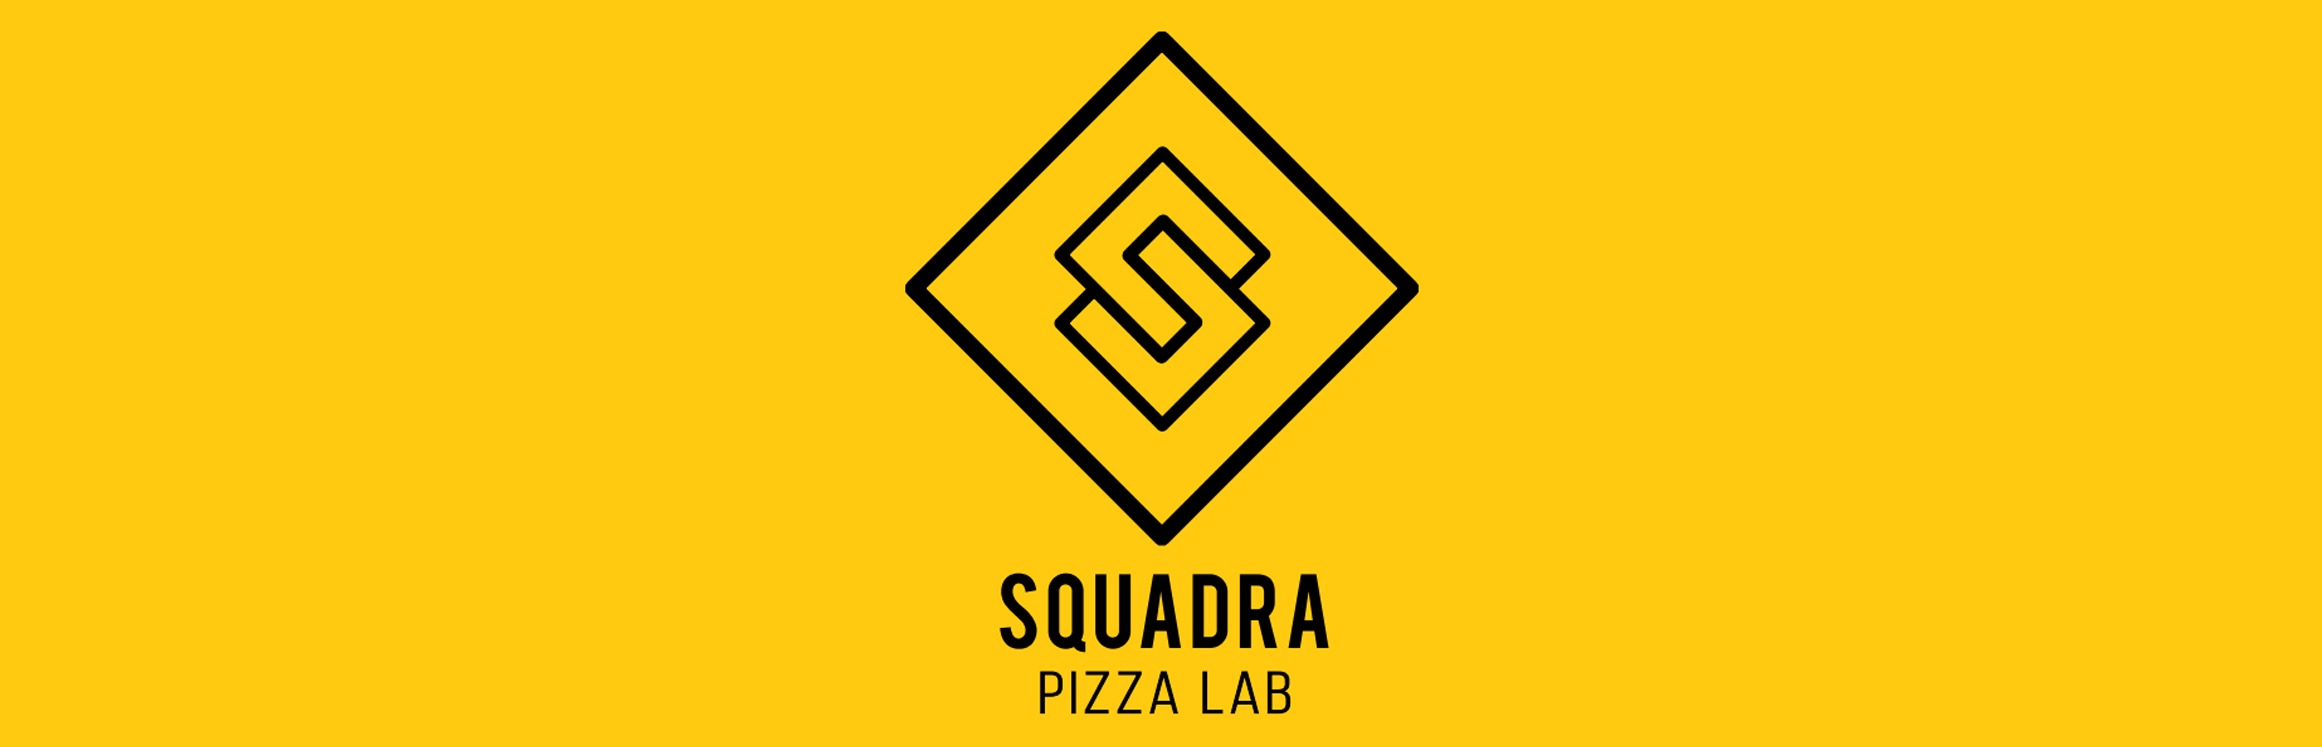 Squadra pizza lab